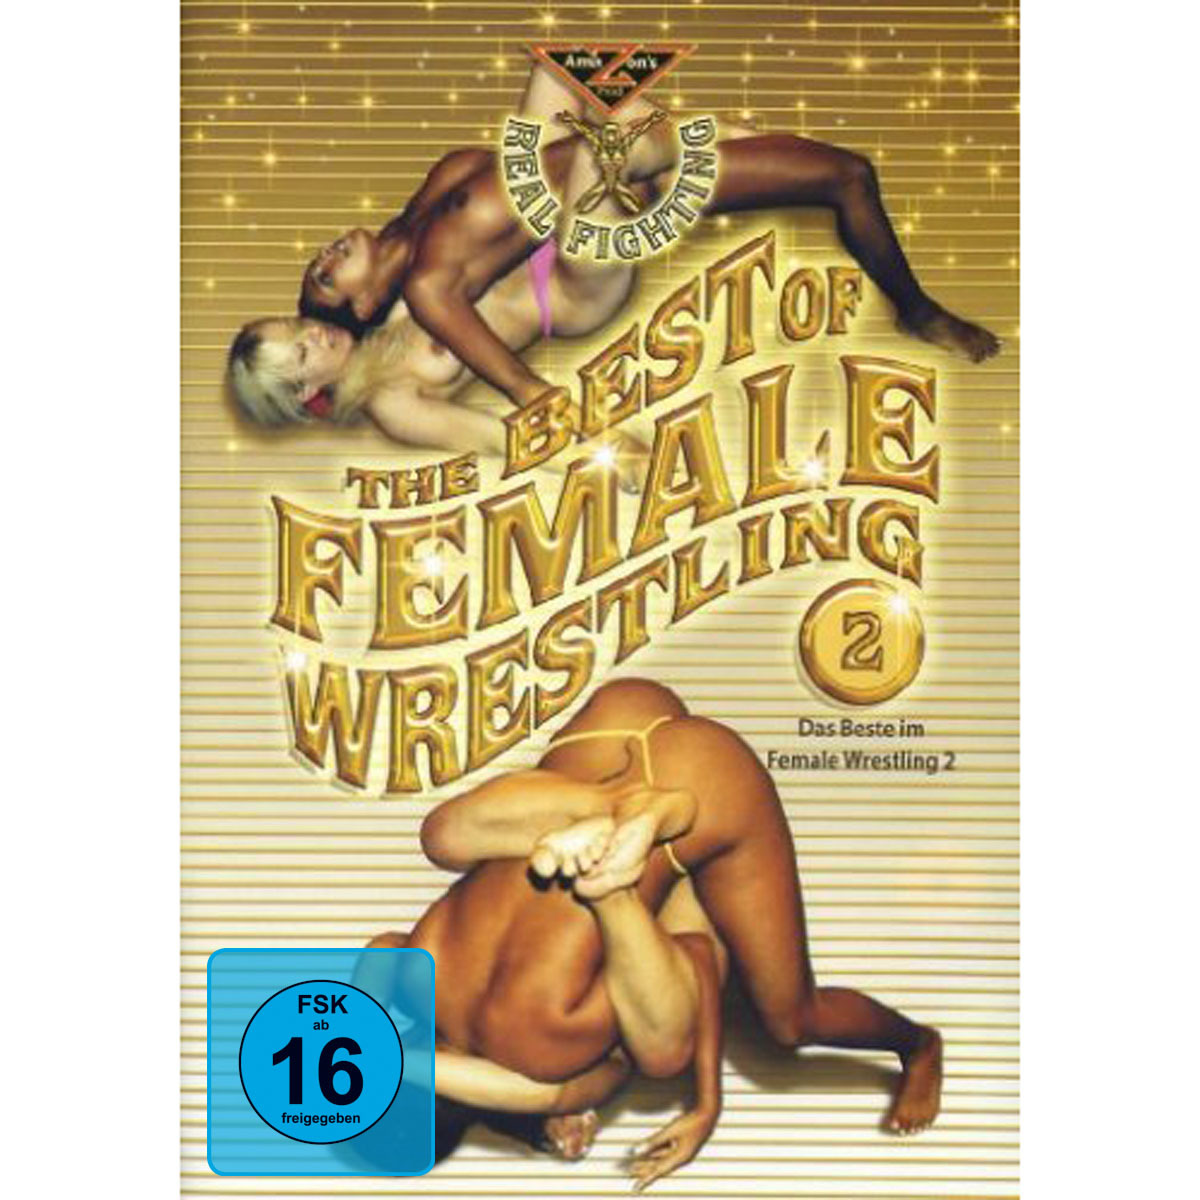 The Best Wrestling Female of 2 DVD